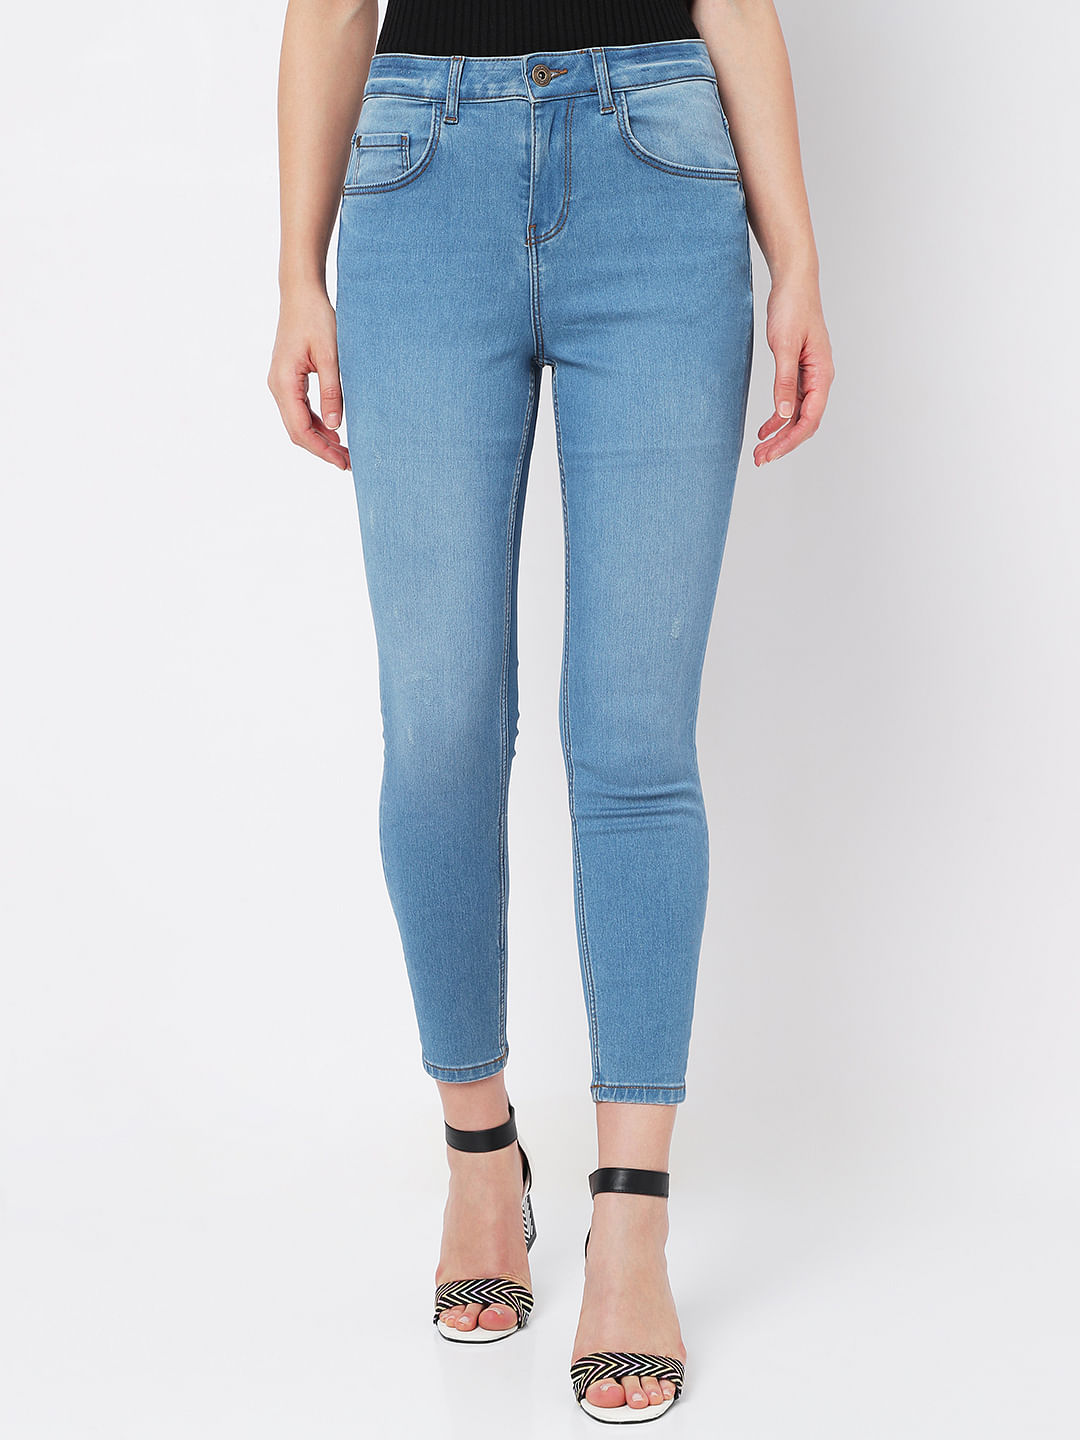 Sunisery Women Boyfriend Baggy Jeans High Waist Straight Leg Denim Pants  with Pockets - Walmart.com